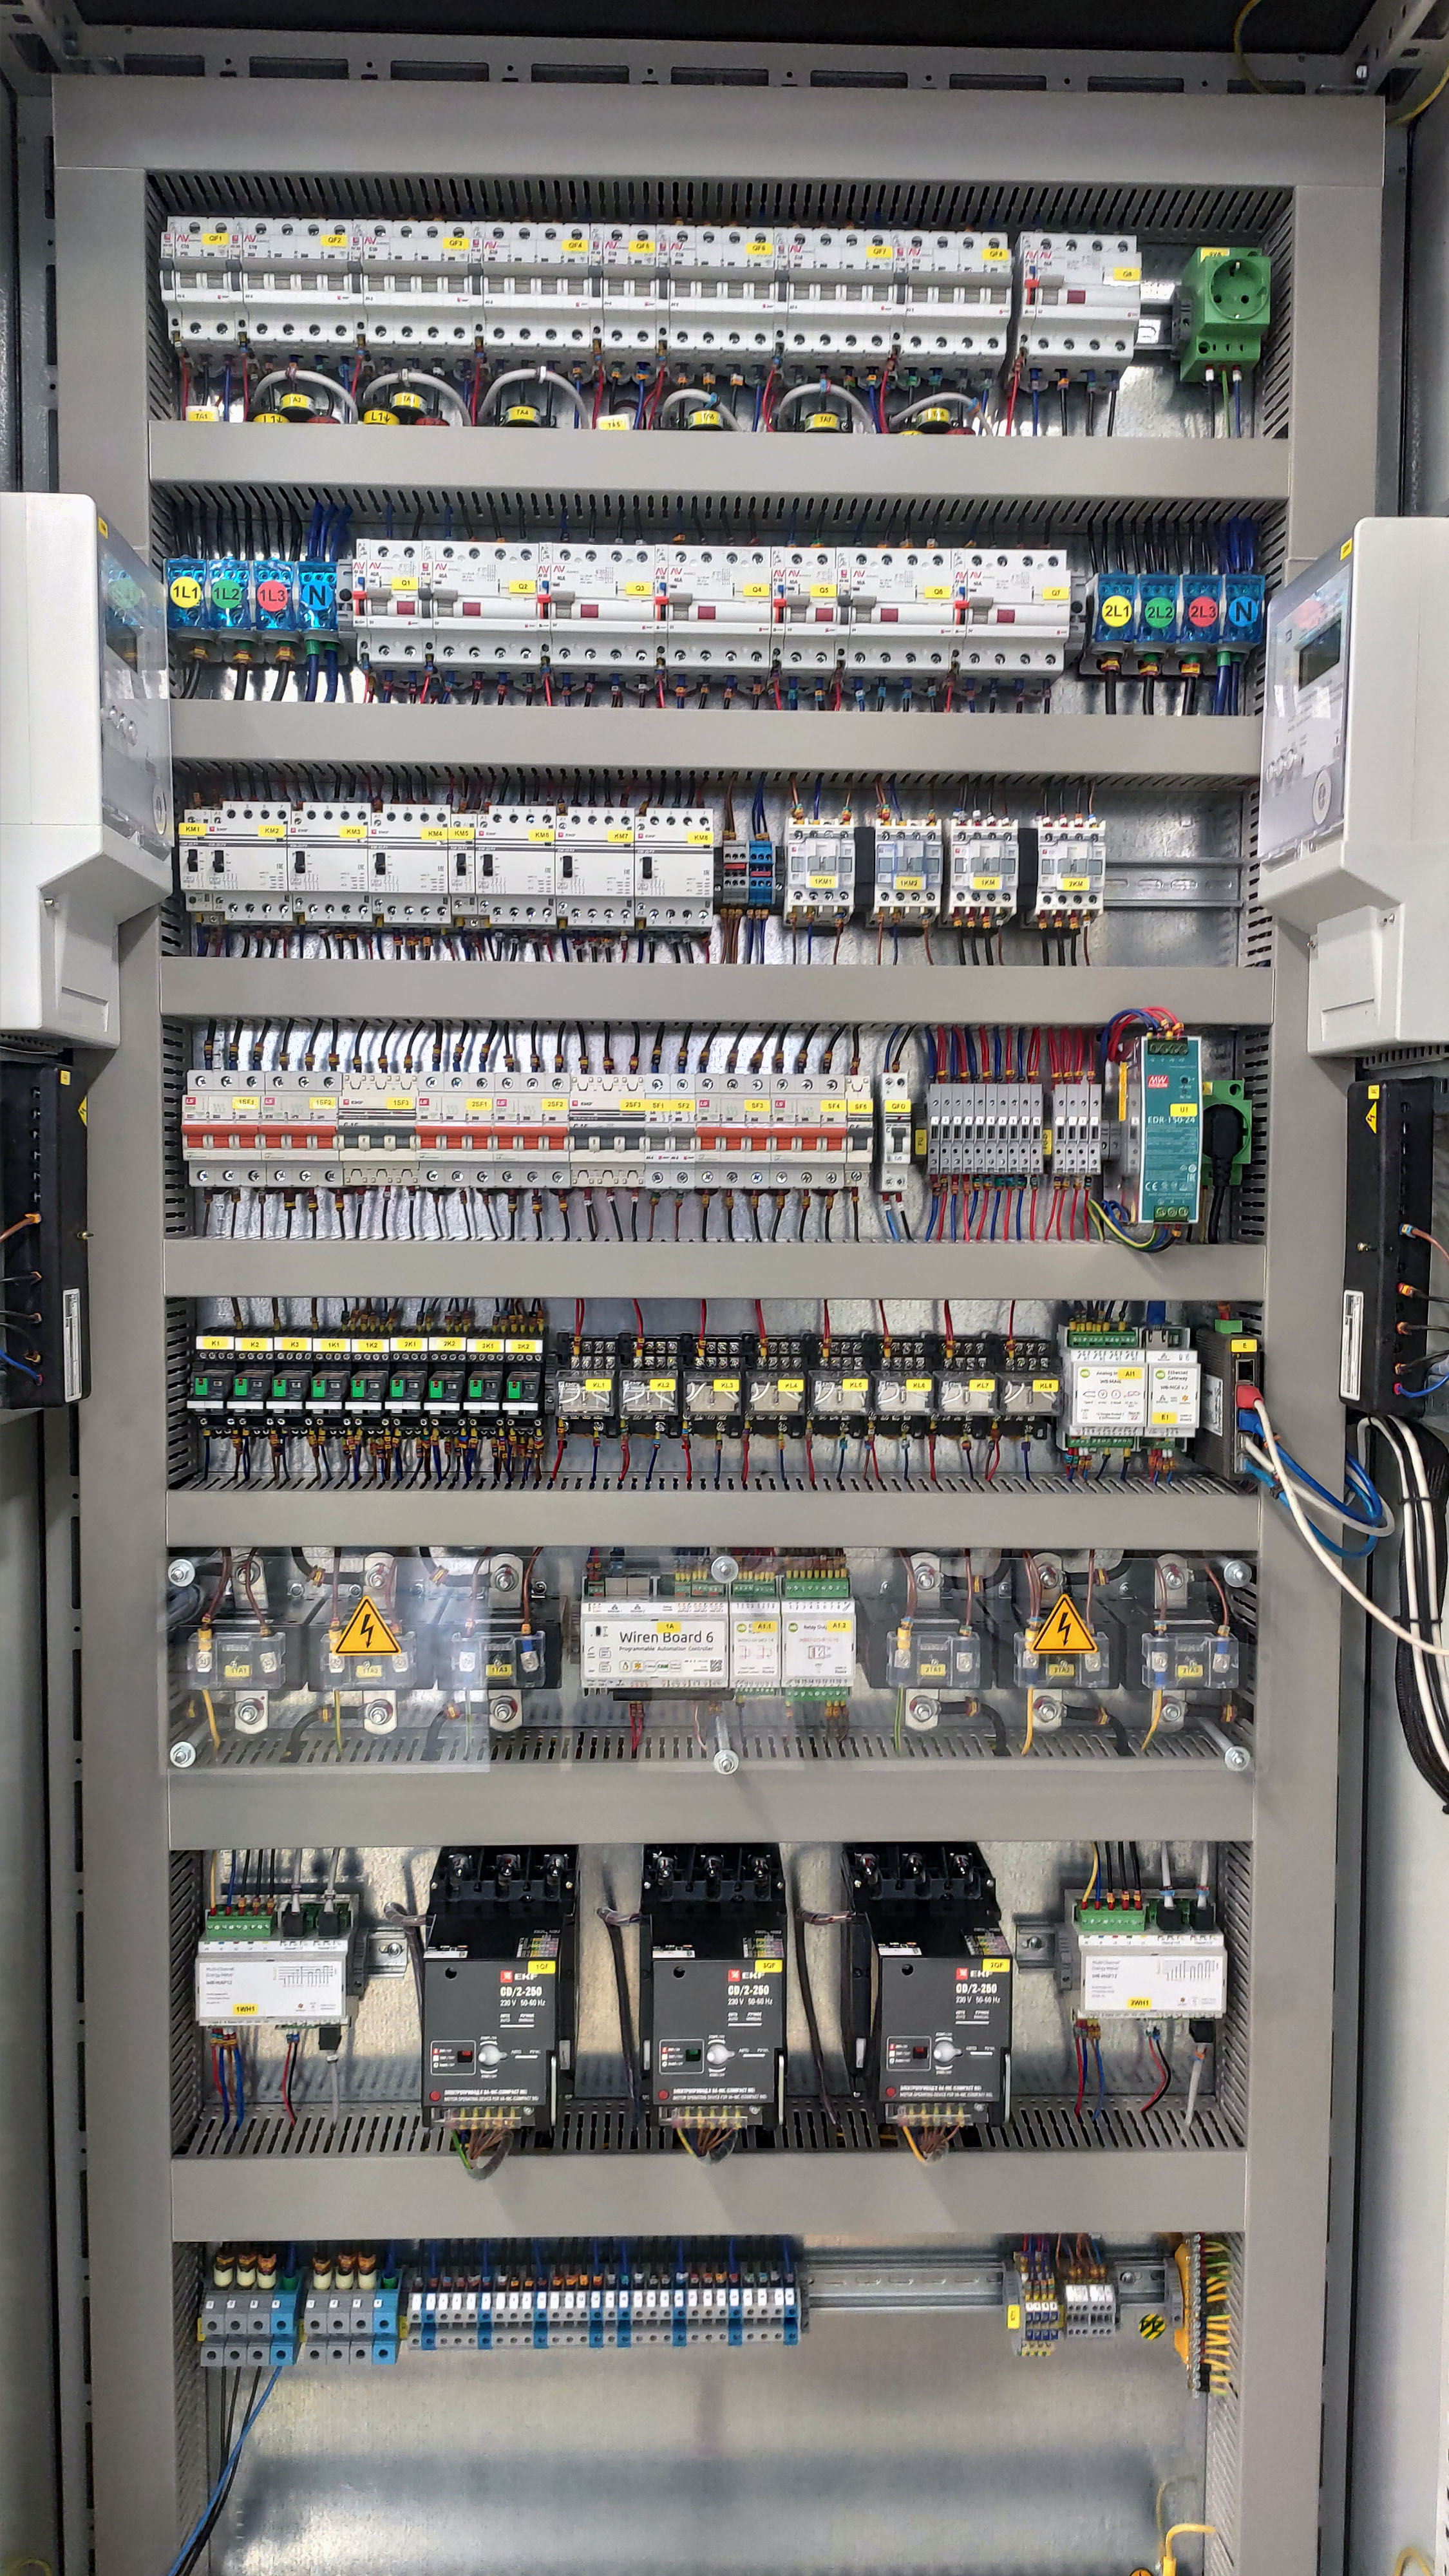 В центре щита промышленной системы электрообогрева — контроллер автоматизации Wiren Board  